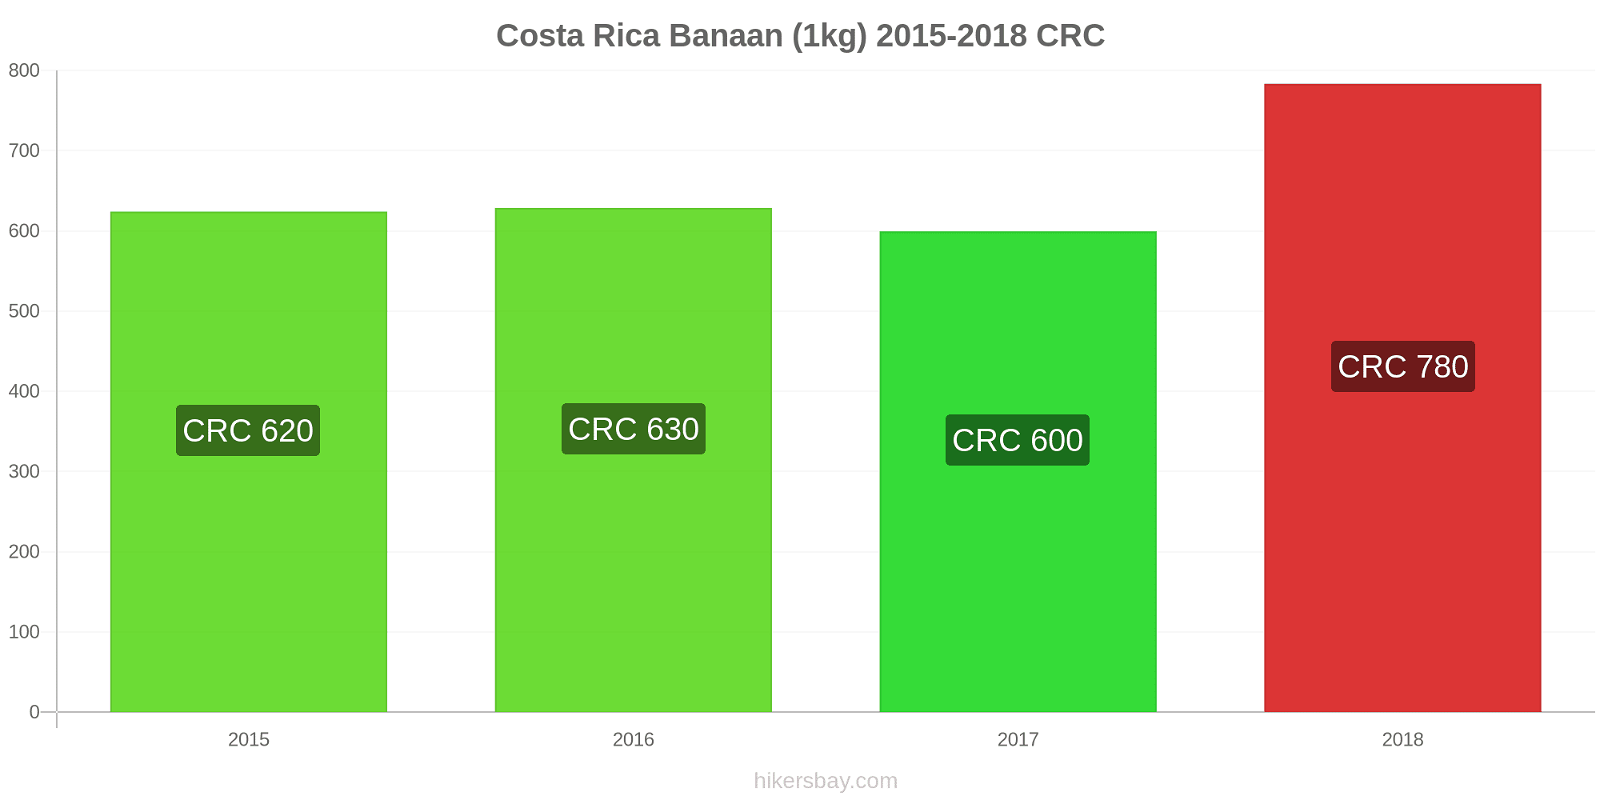 Costa Rica prijswijzigingen Bananen (1kg) hikersbay.com